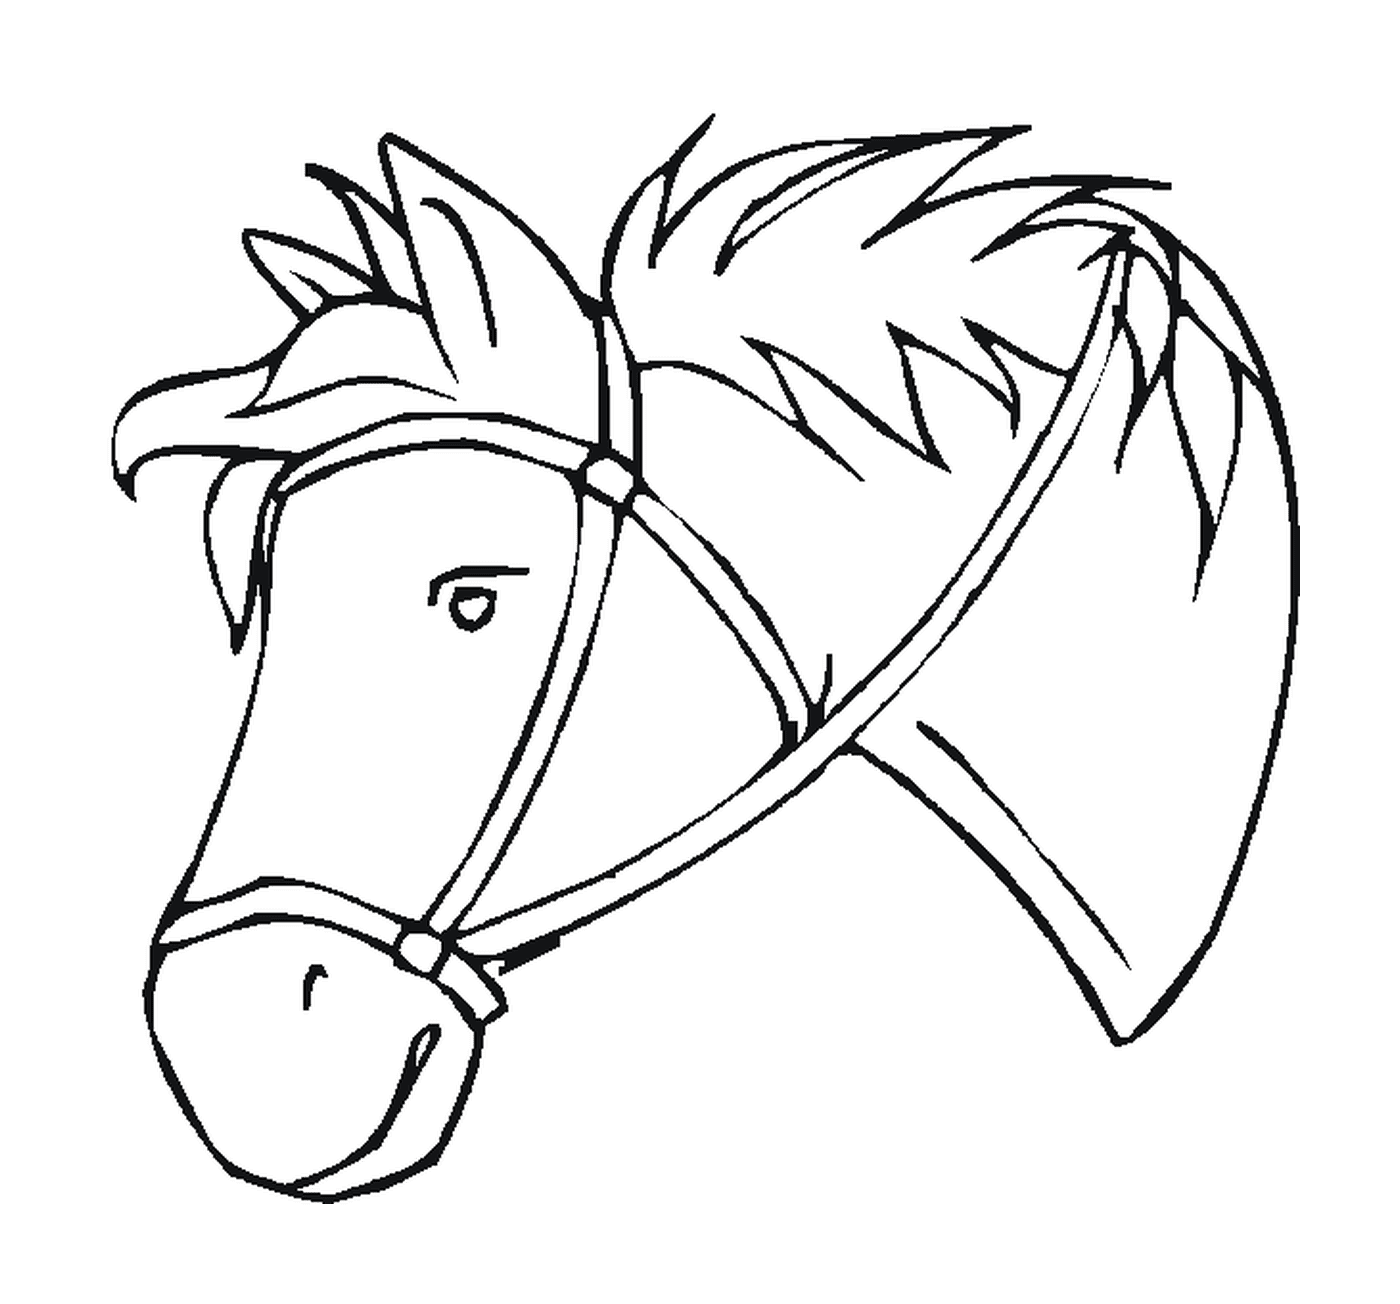  Anmutiger Kopf eines Pferdes mit einem Geschirr 